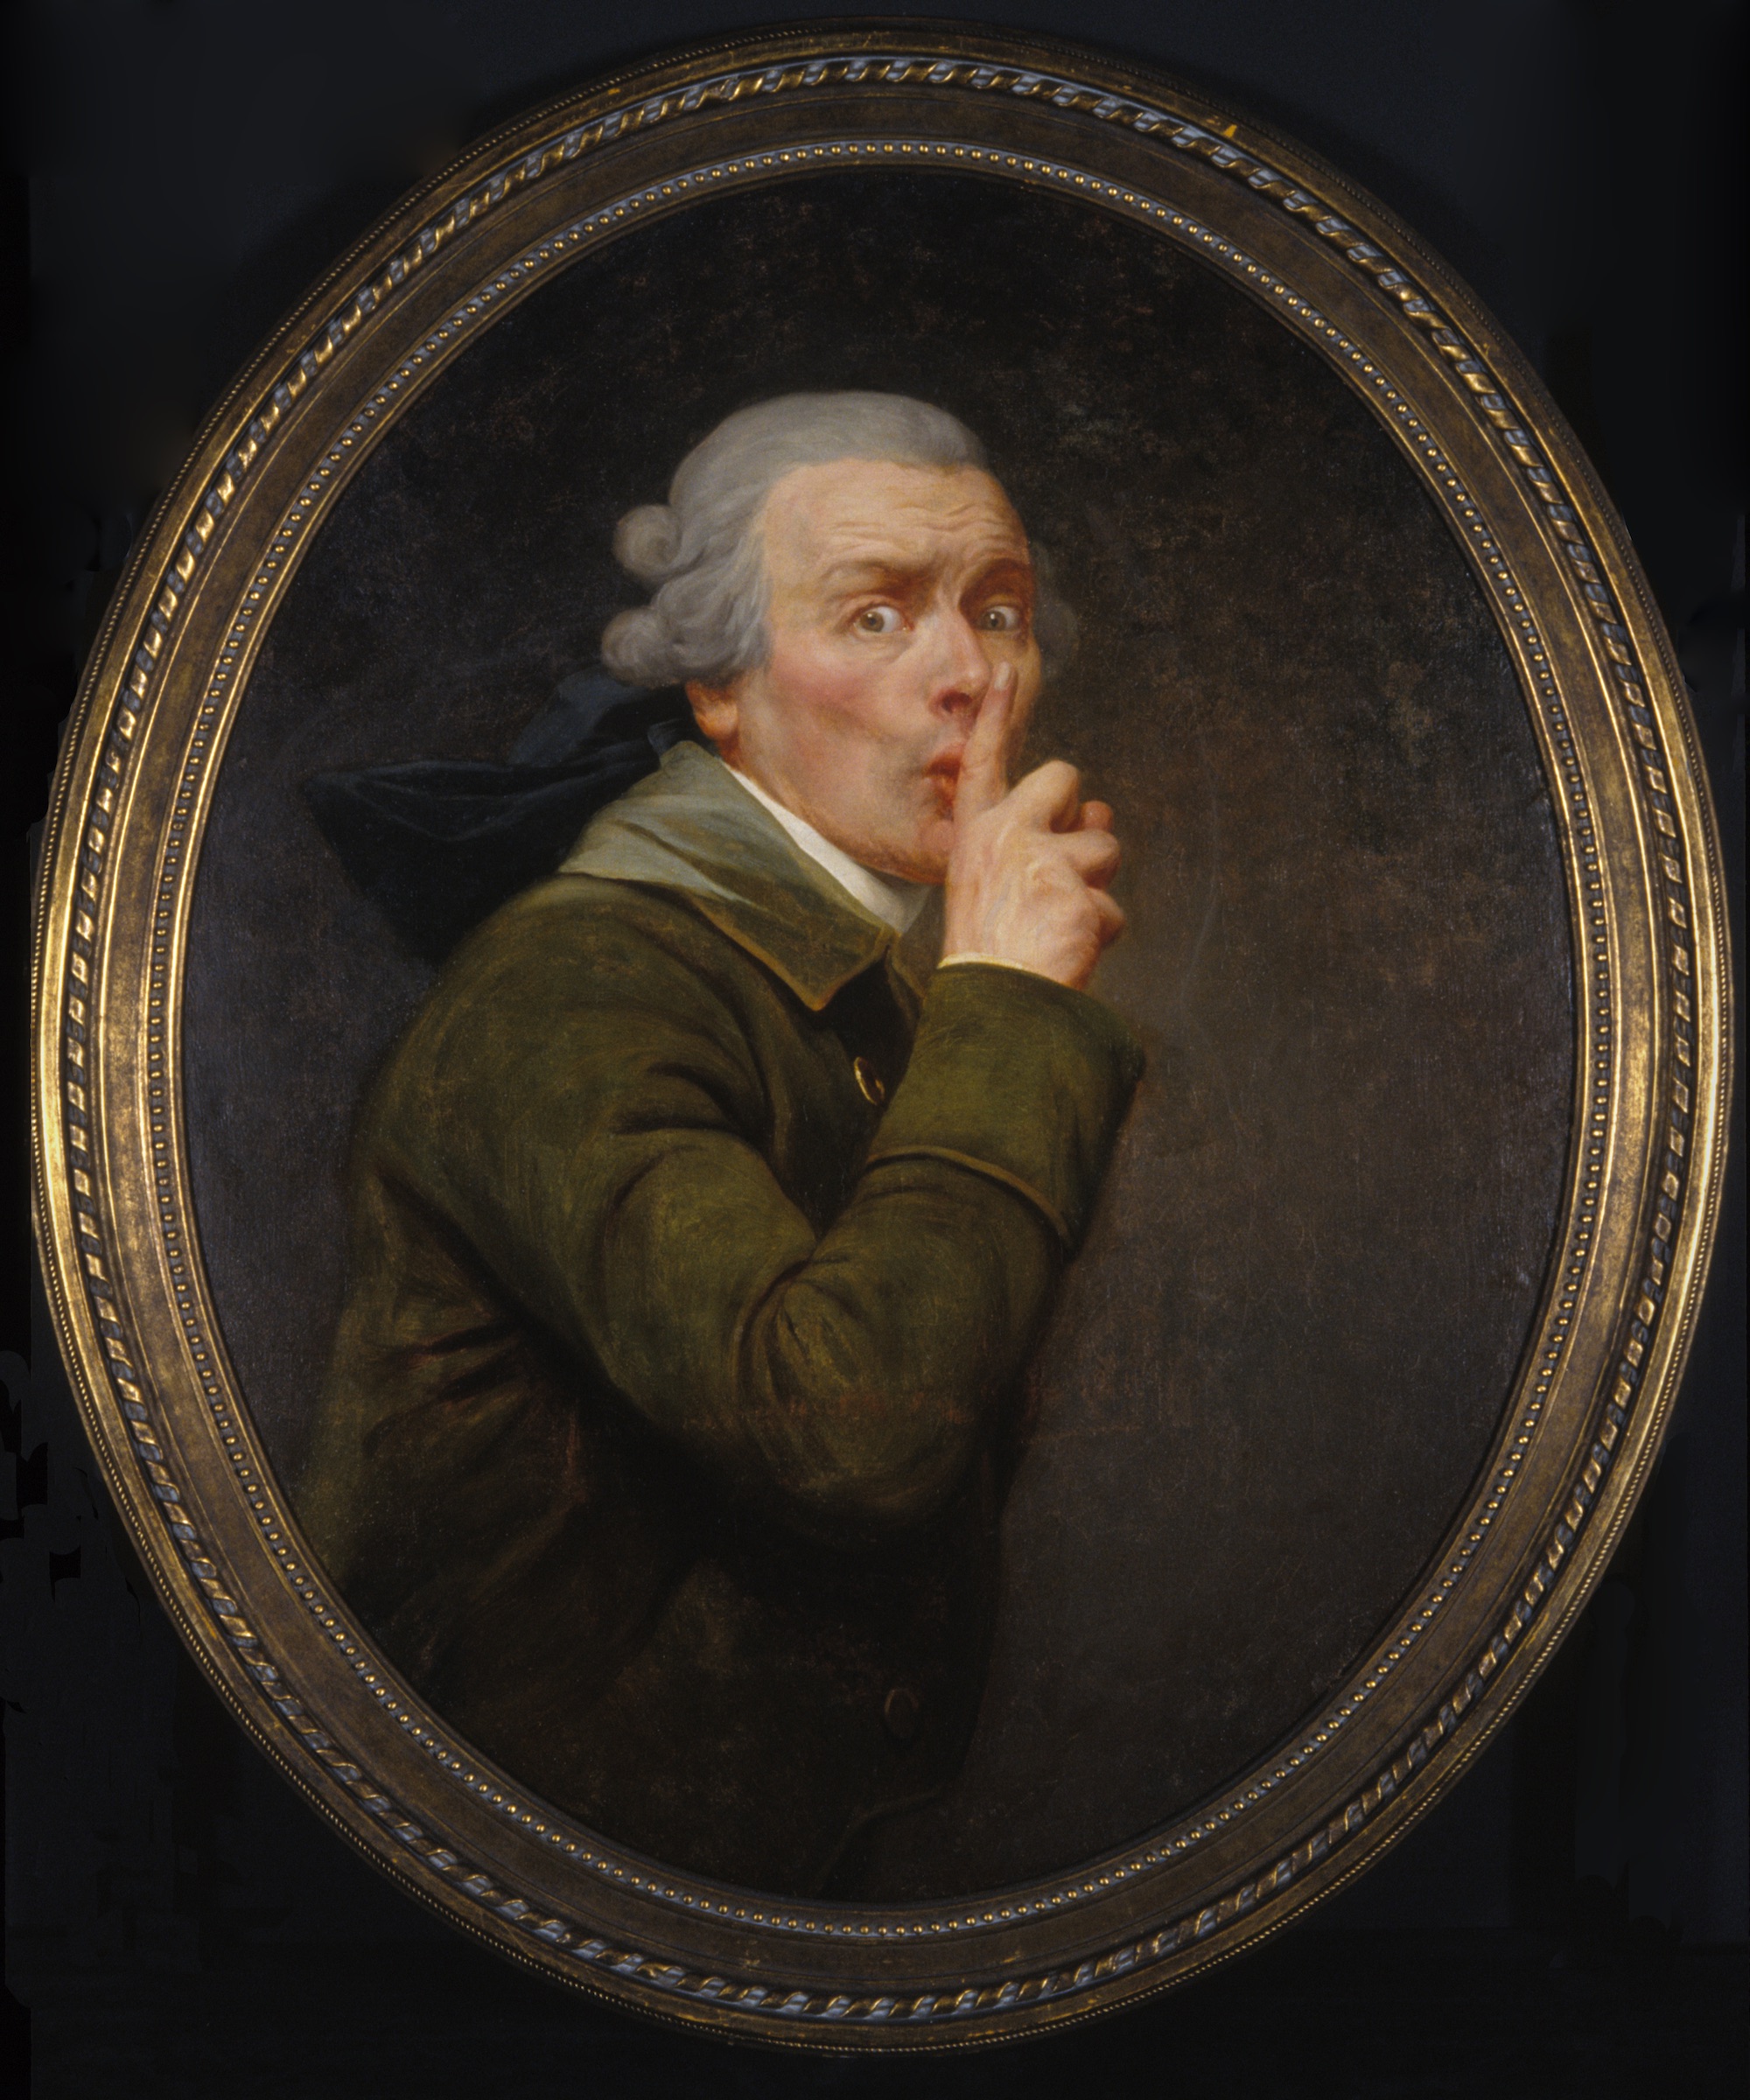 Le Discret by Joseph Ducreux - etwa 1791 - 91.6 x 79.9 cm Spencer Museum of Art